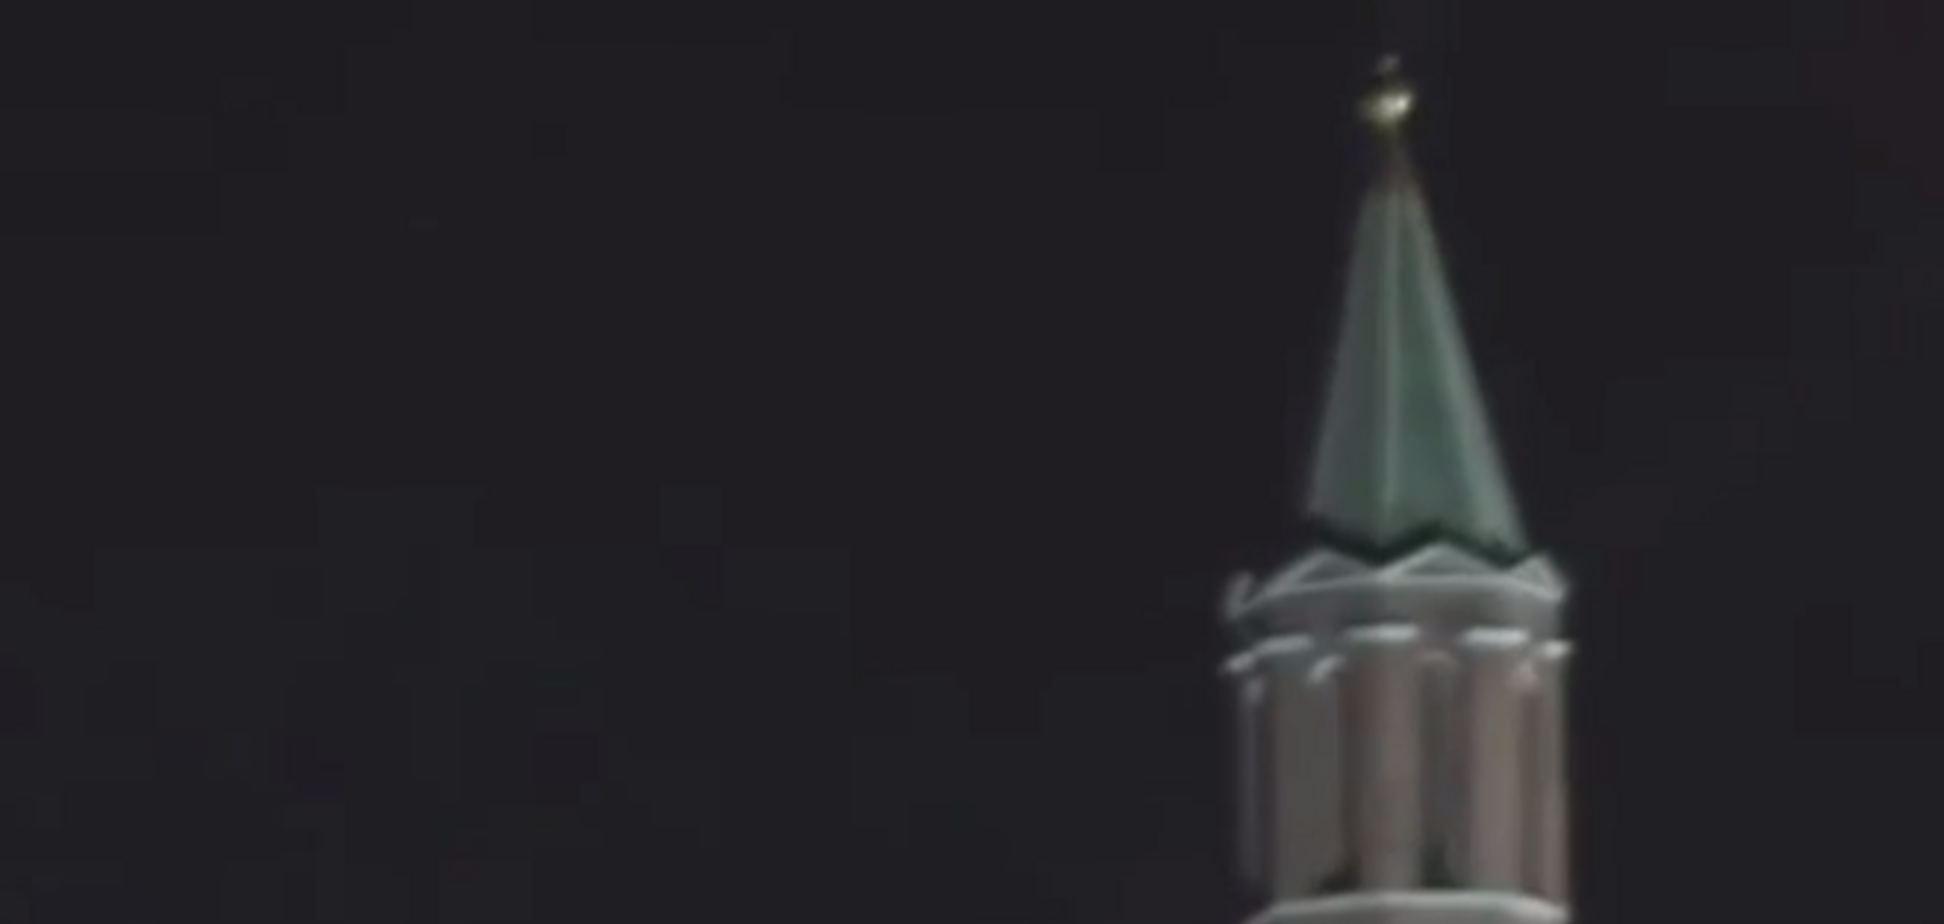 'Что бы это значило?'. Над Кремлем 'пропали' флаги: видеофакт